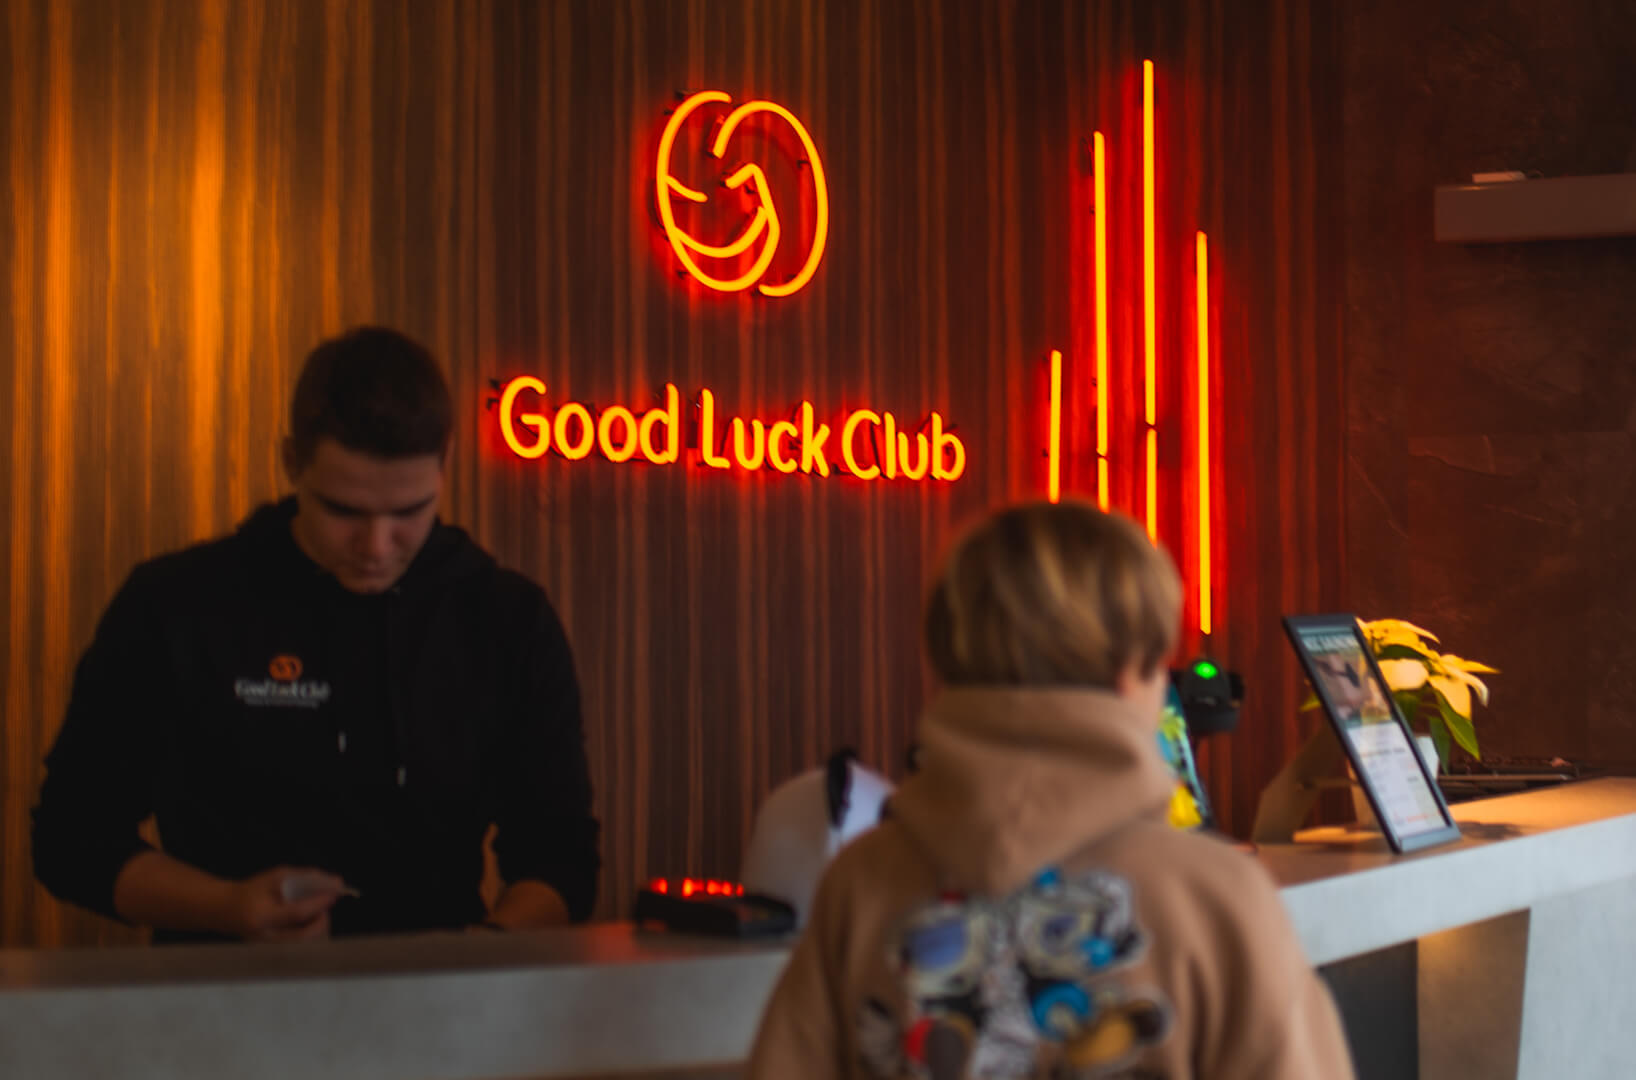 Good Luck Club - Rood neonbord in de receptie met het bedrijfslogo.